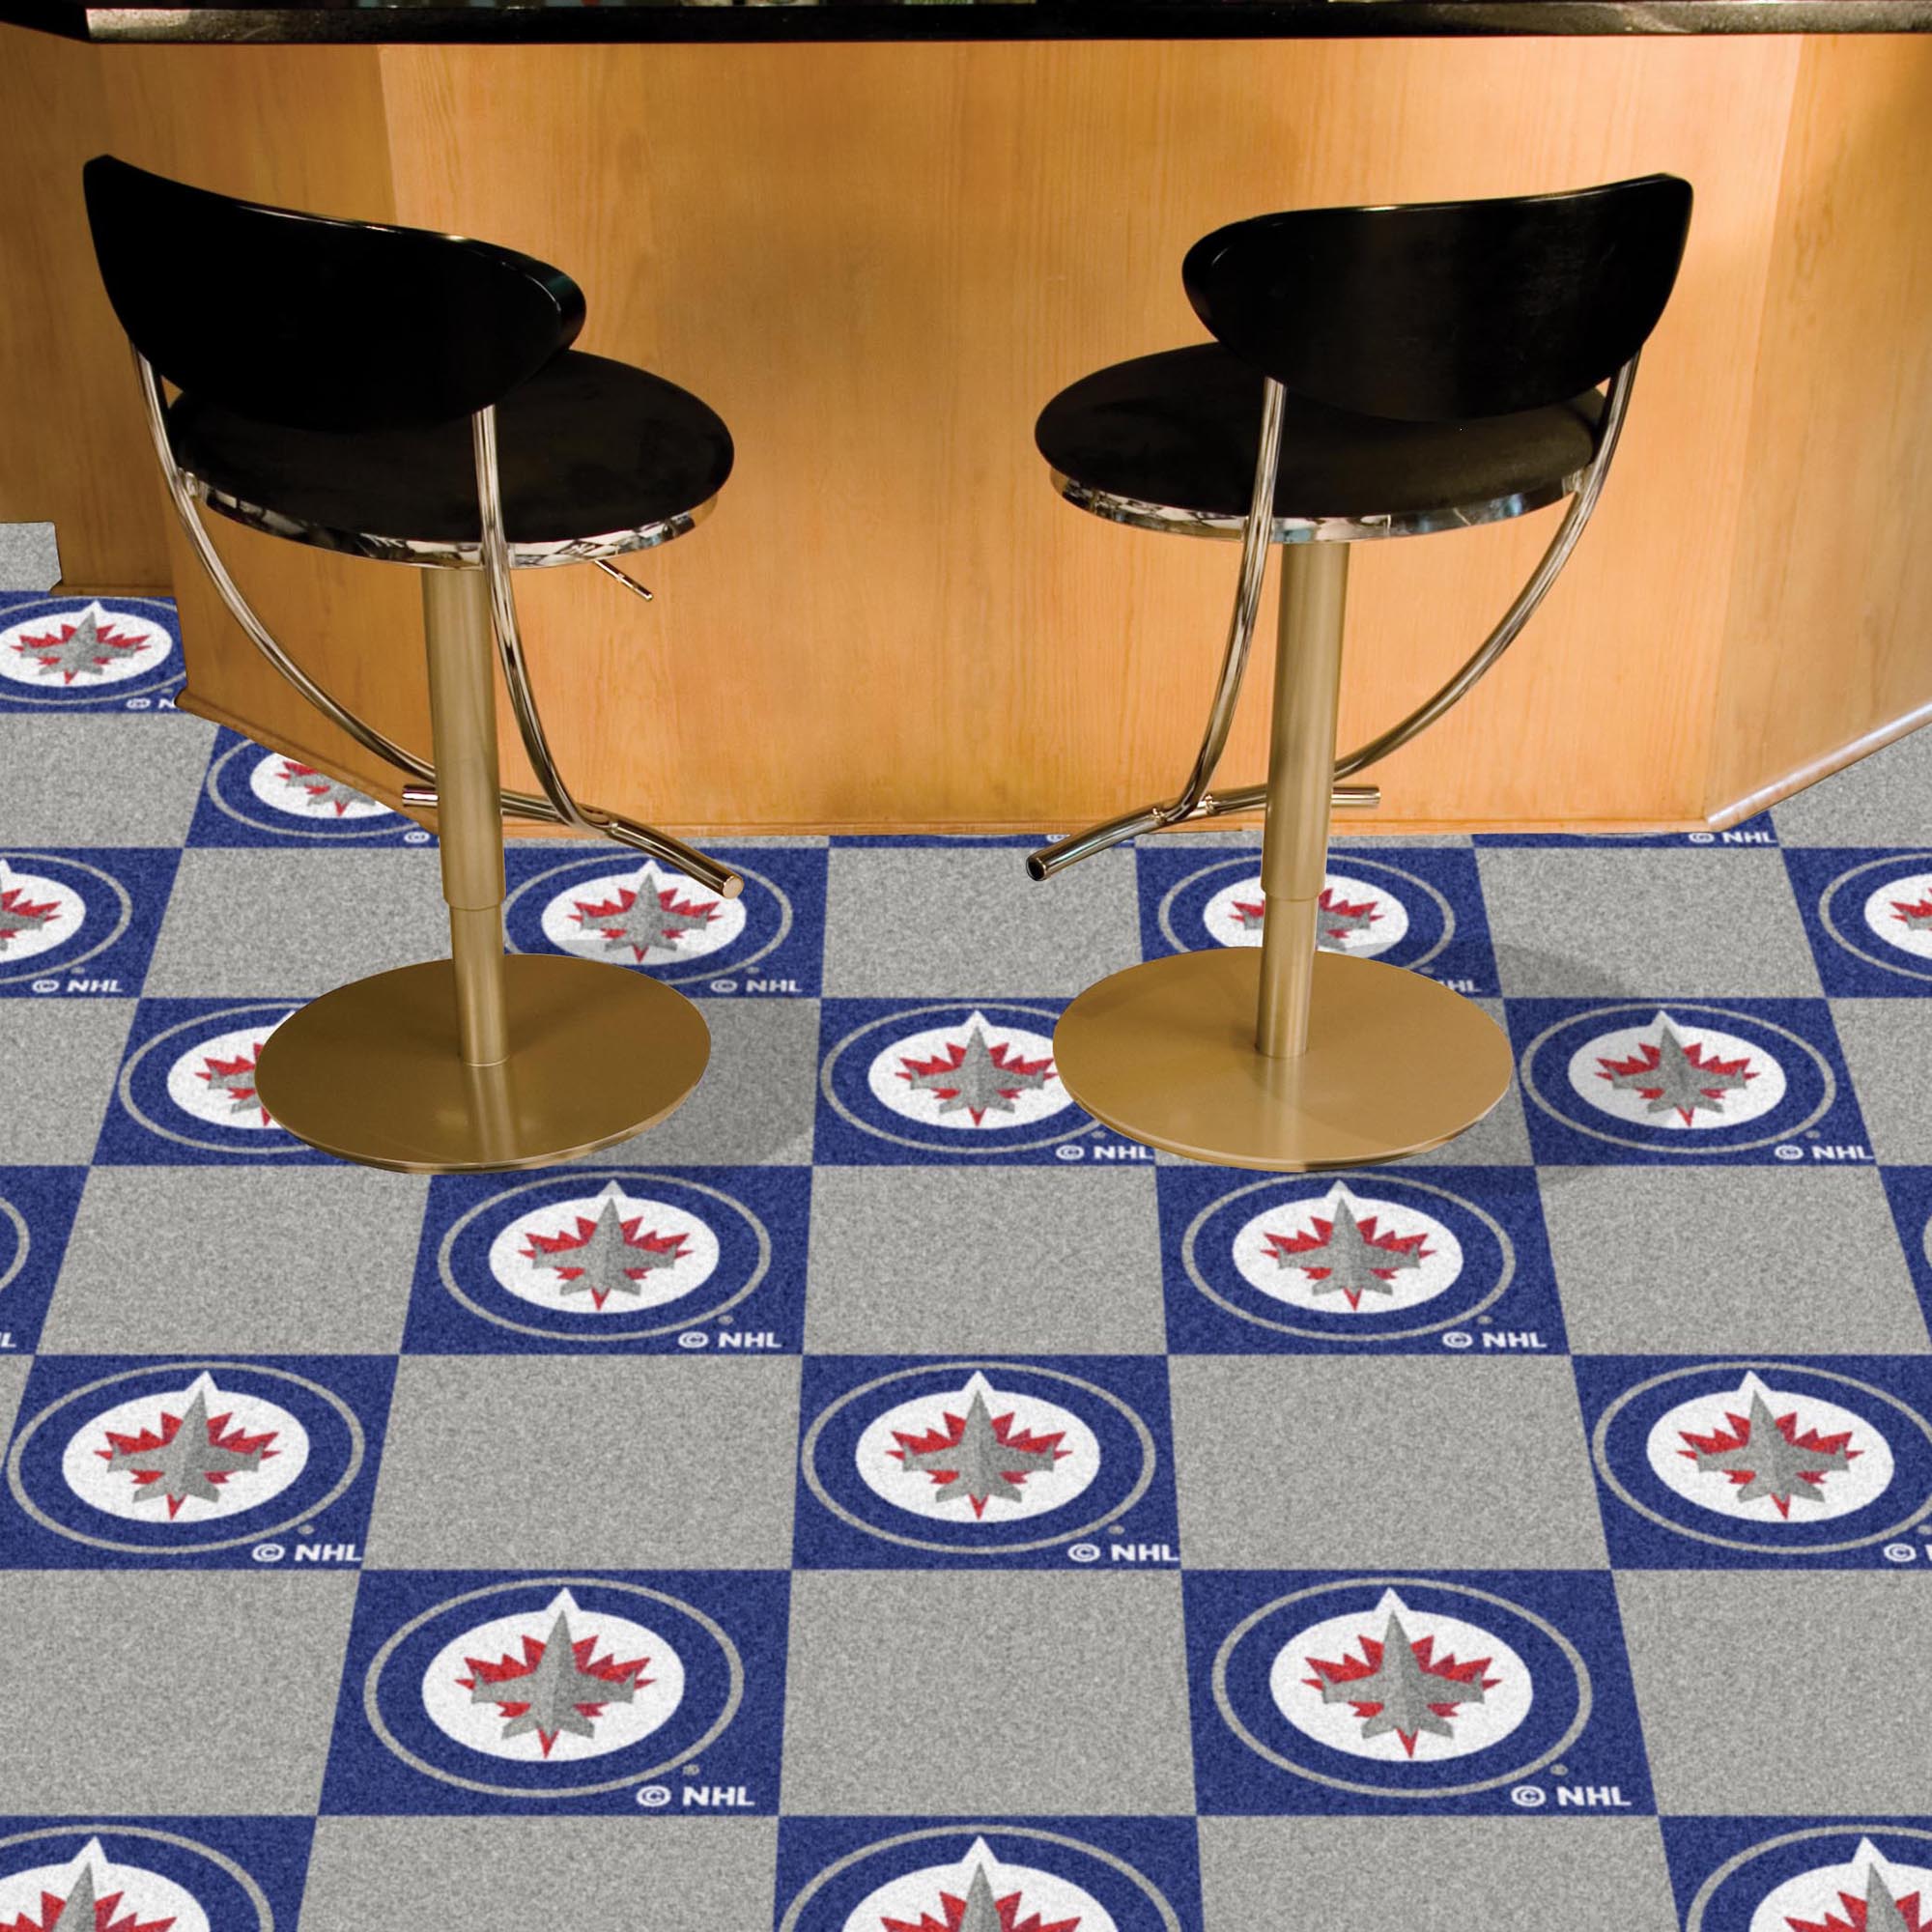 Winnipeg Jets Team Carpet Tiles - 45 sq ft